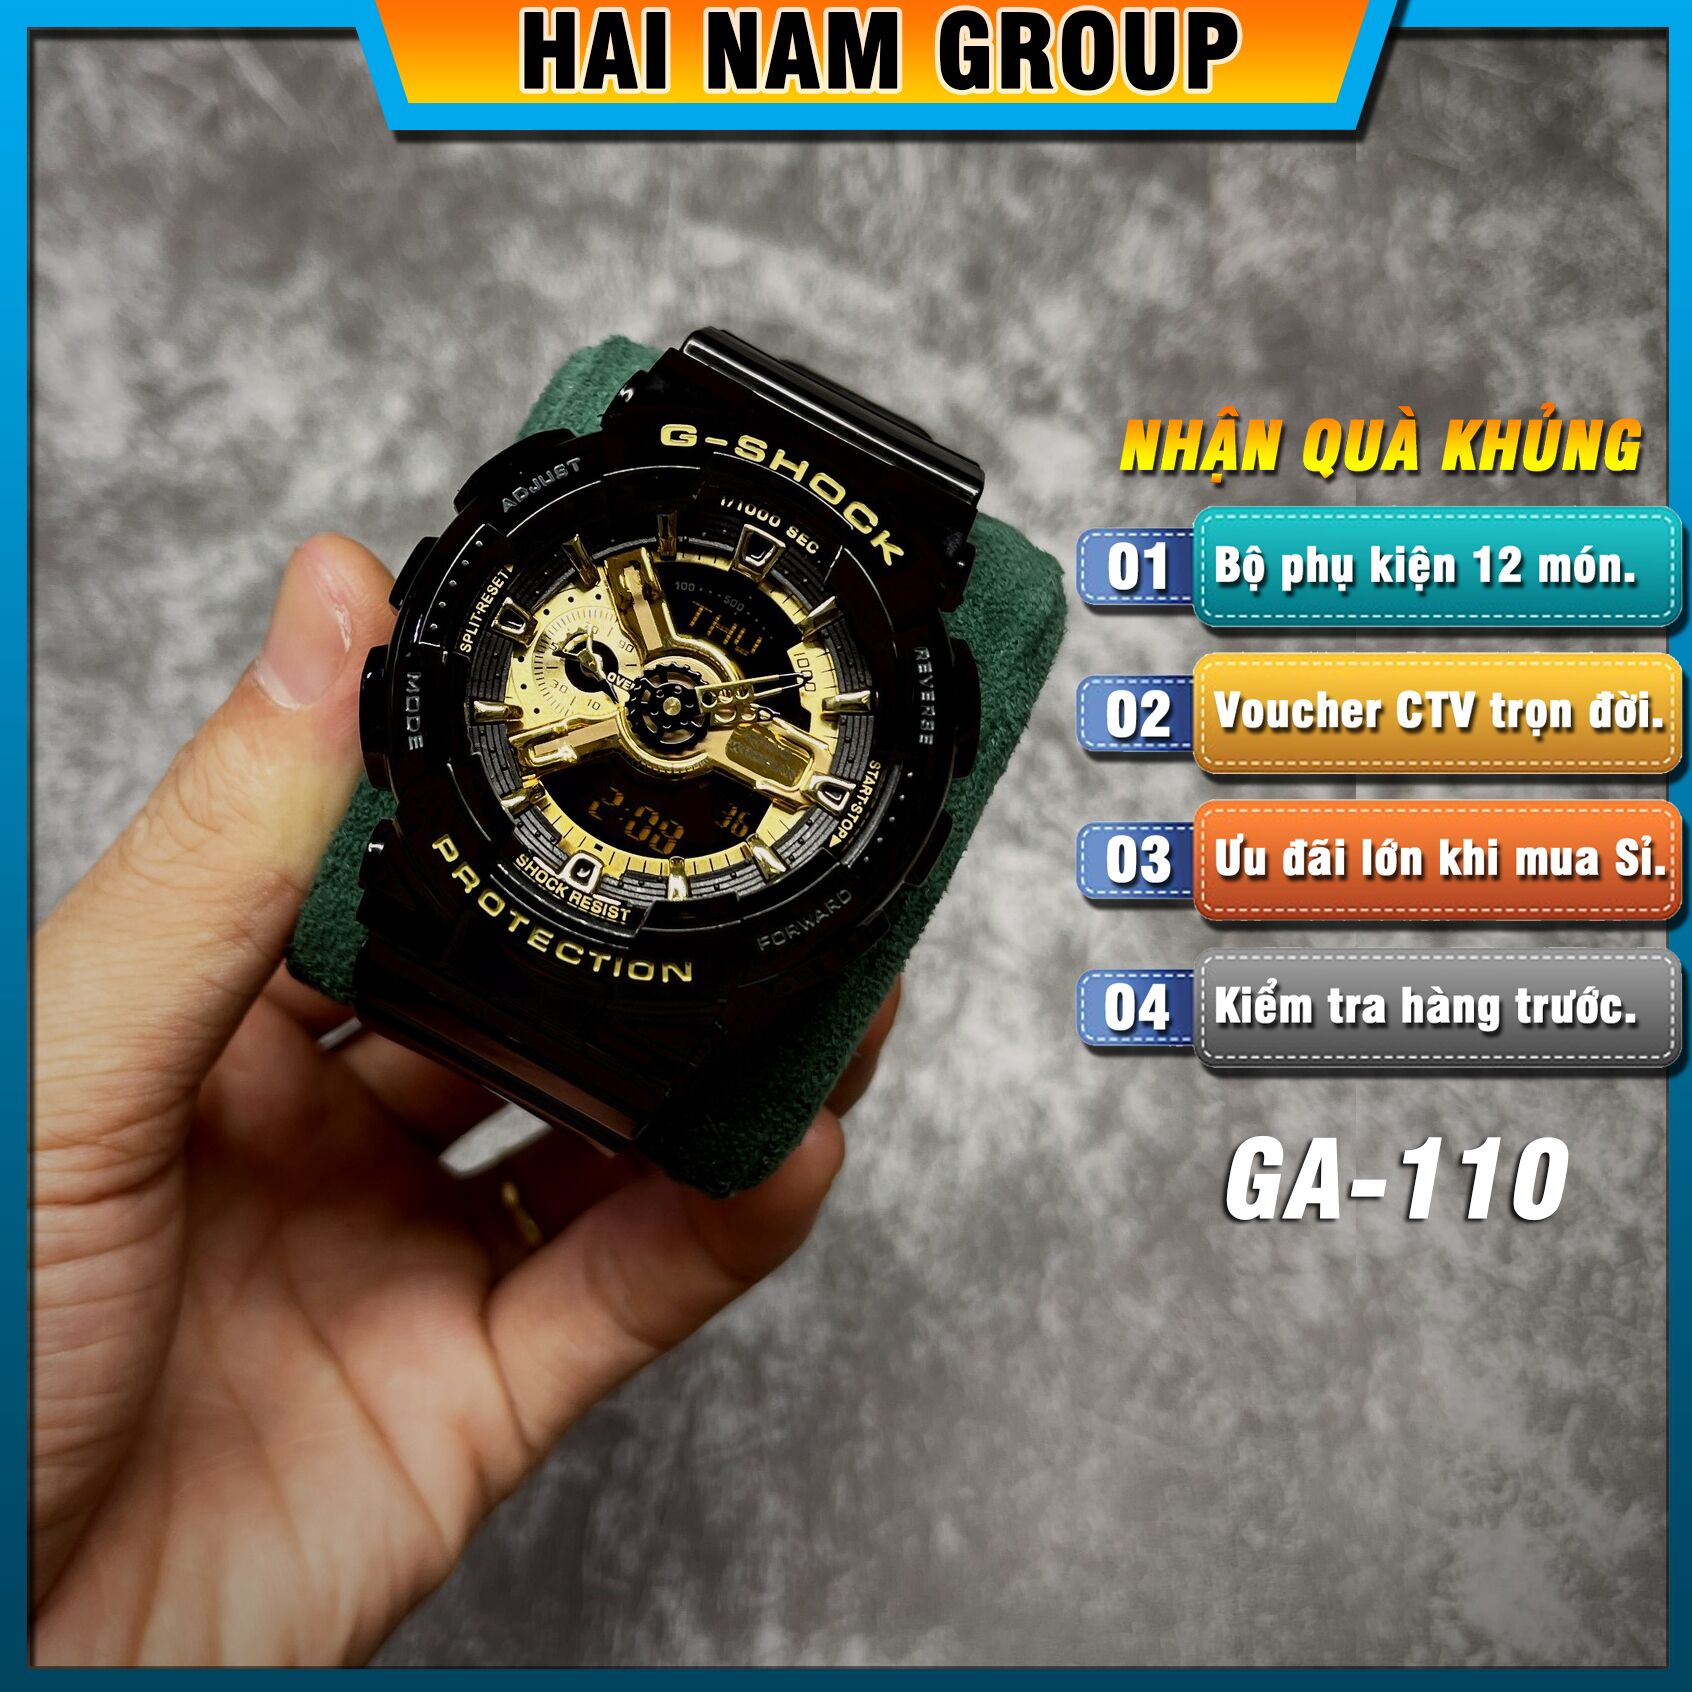 Đồng hồ nam nữ G-SHOCK GA-110GB-1A REP 1:1 Màu Đen Mặt Vàng Bóng tại Hải Nam Group 1